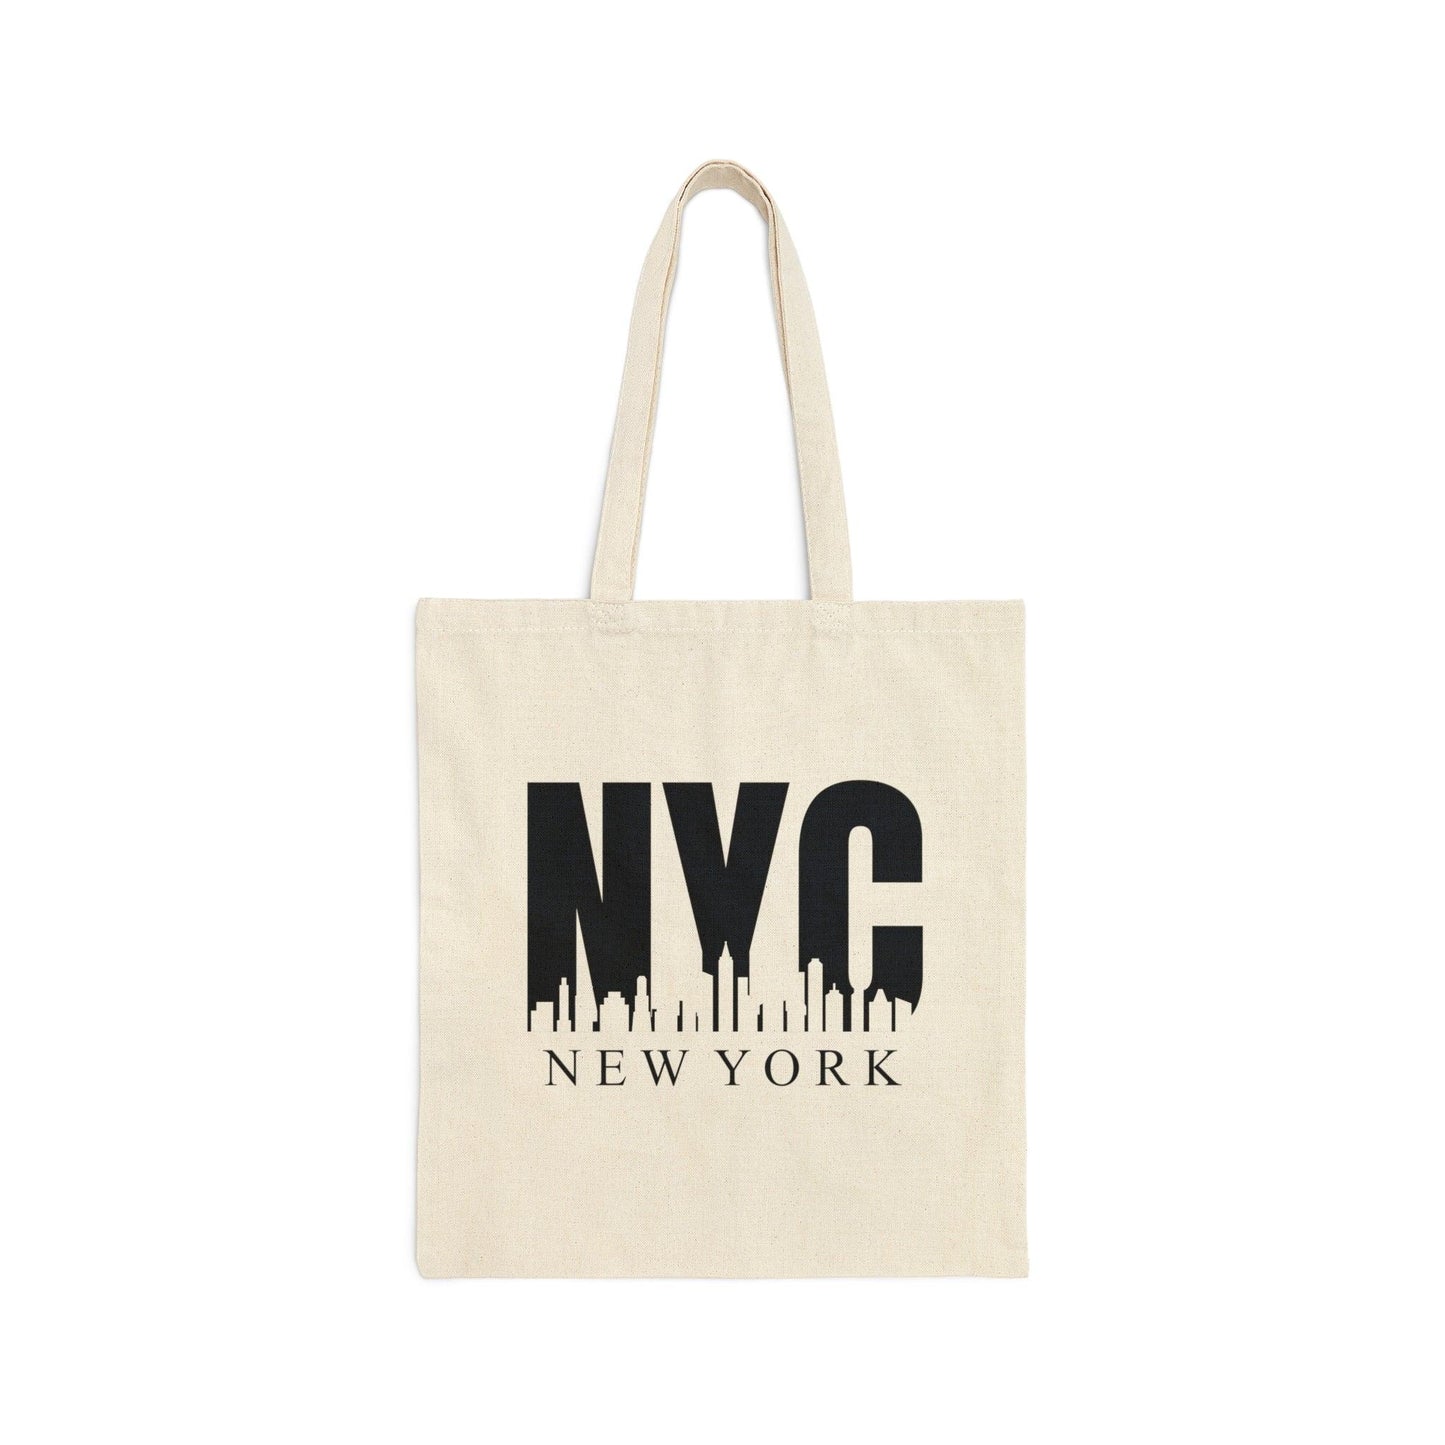 NYC Canvas Tote Bag - Departures Print Shop